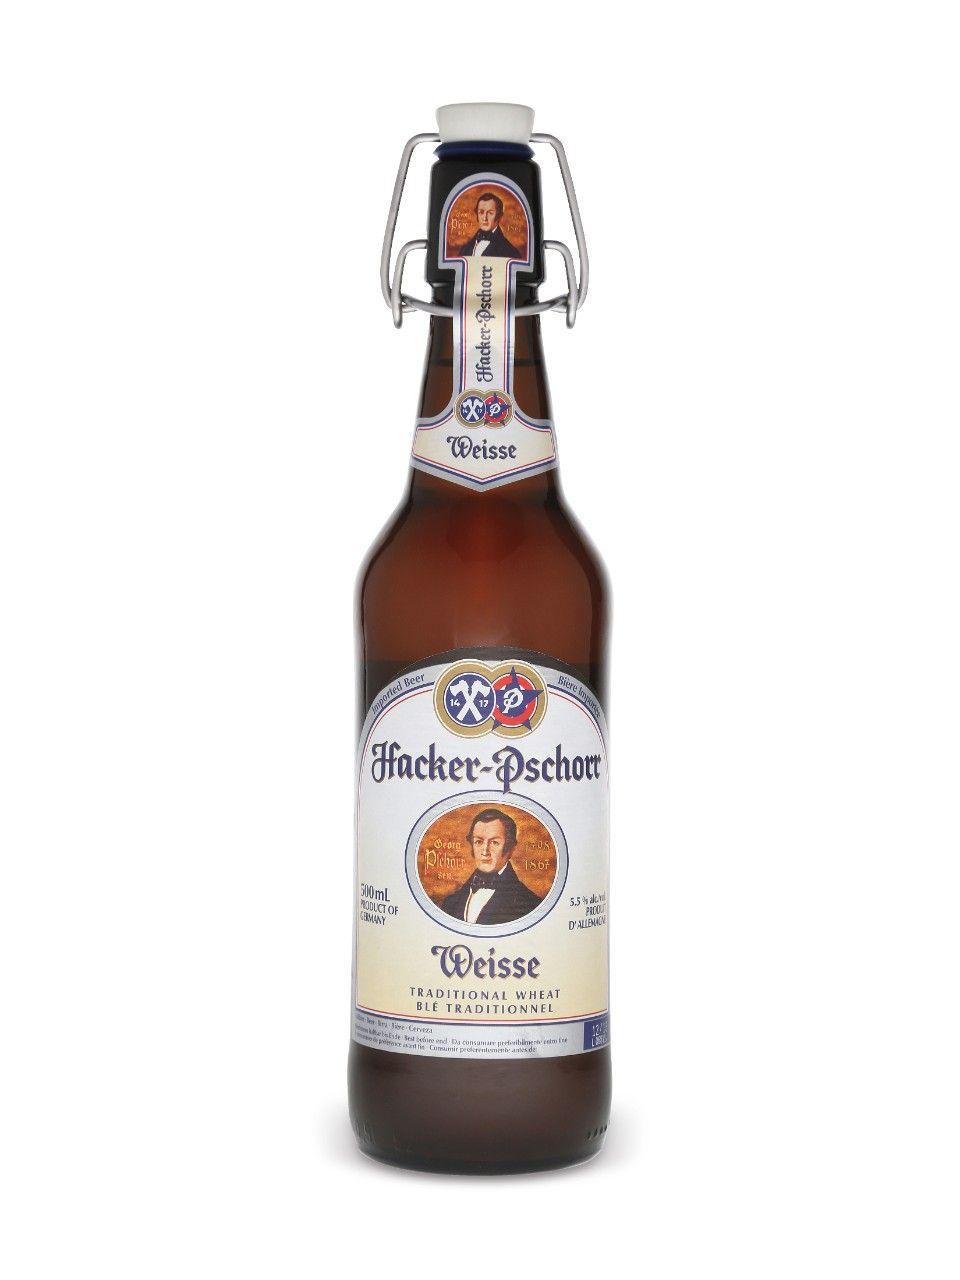 Hacker-Pschorr Logo - Hacker Pschorr Weisse Bier